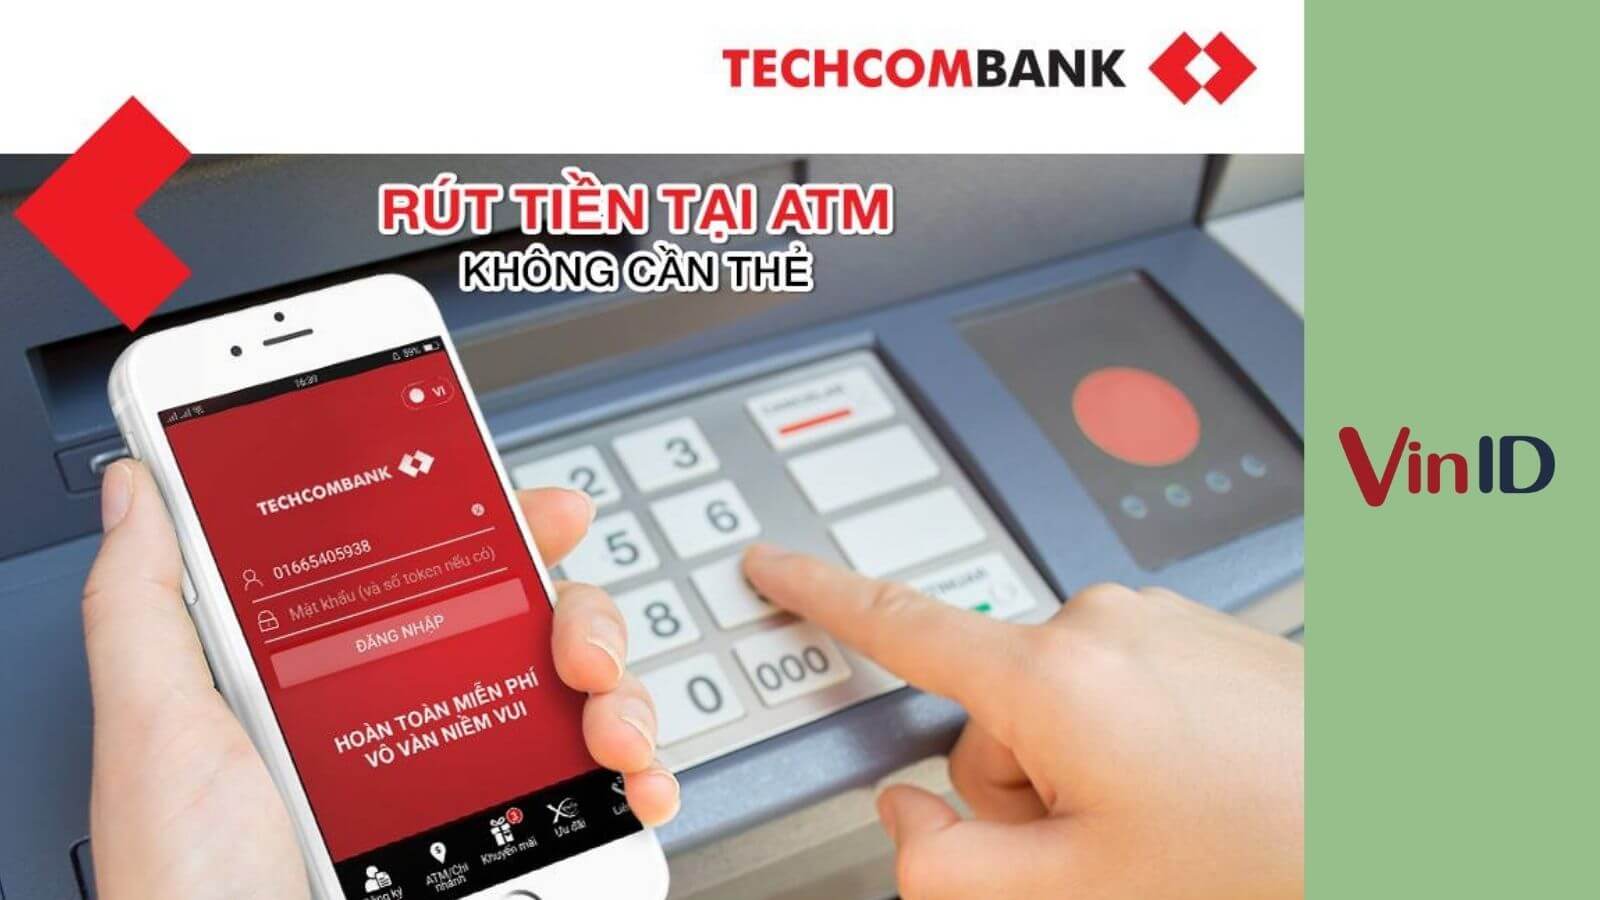 Rút tiền không cần thẻ Techcombank